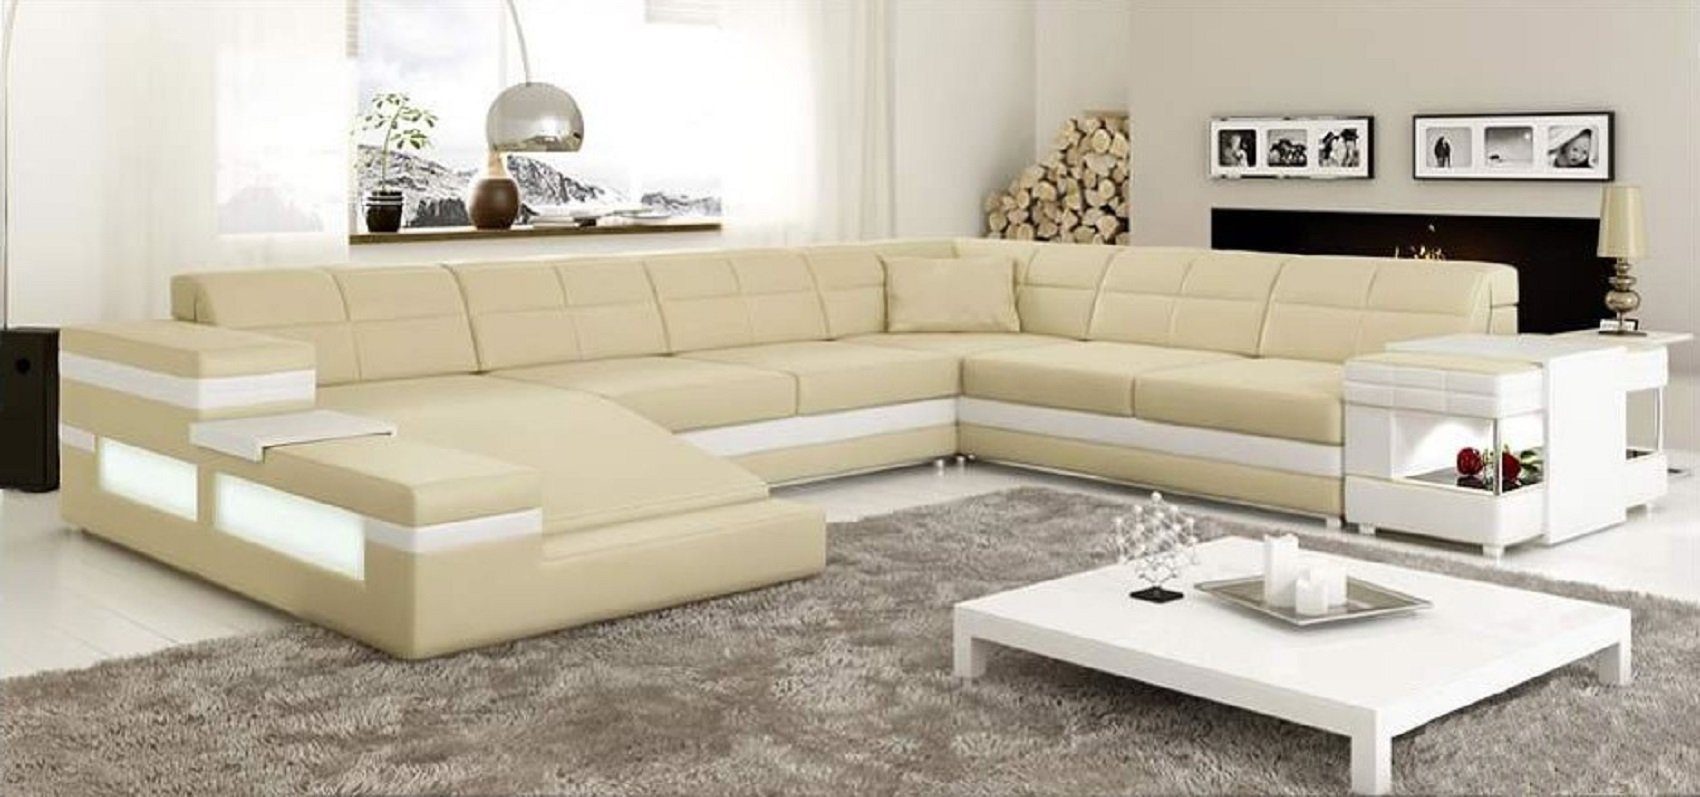 JVmoebel Ecksofa Design Ecksofa Sofa Couch Polster Eckgarnitur Ledersofa Sofa, Made in Europe Beige/Weiß